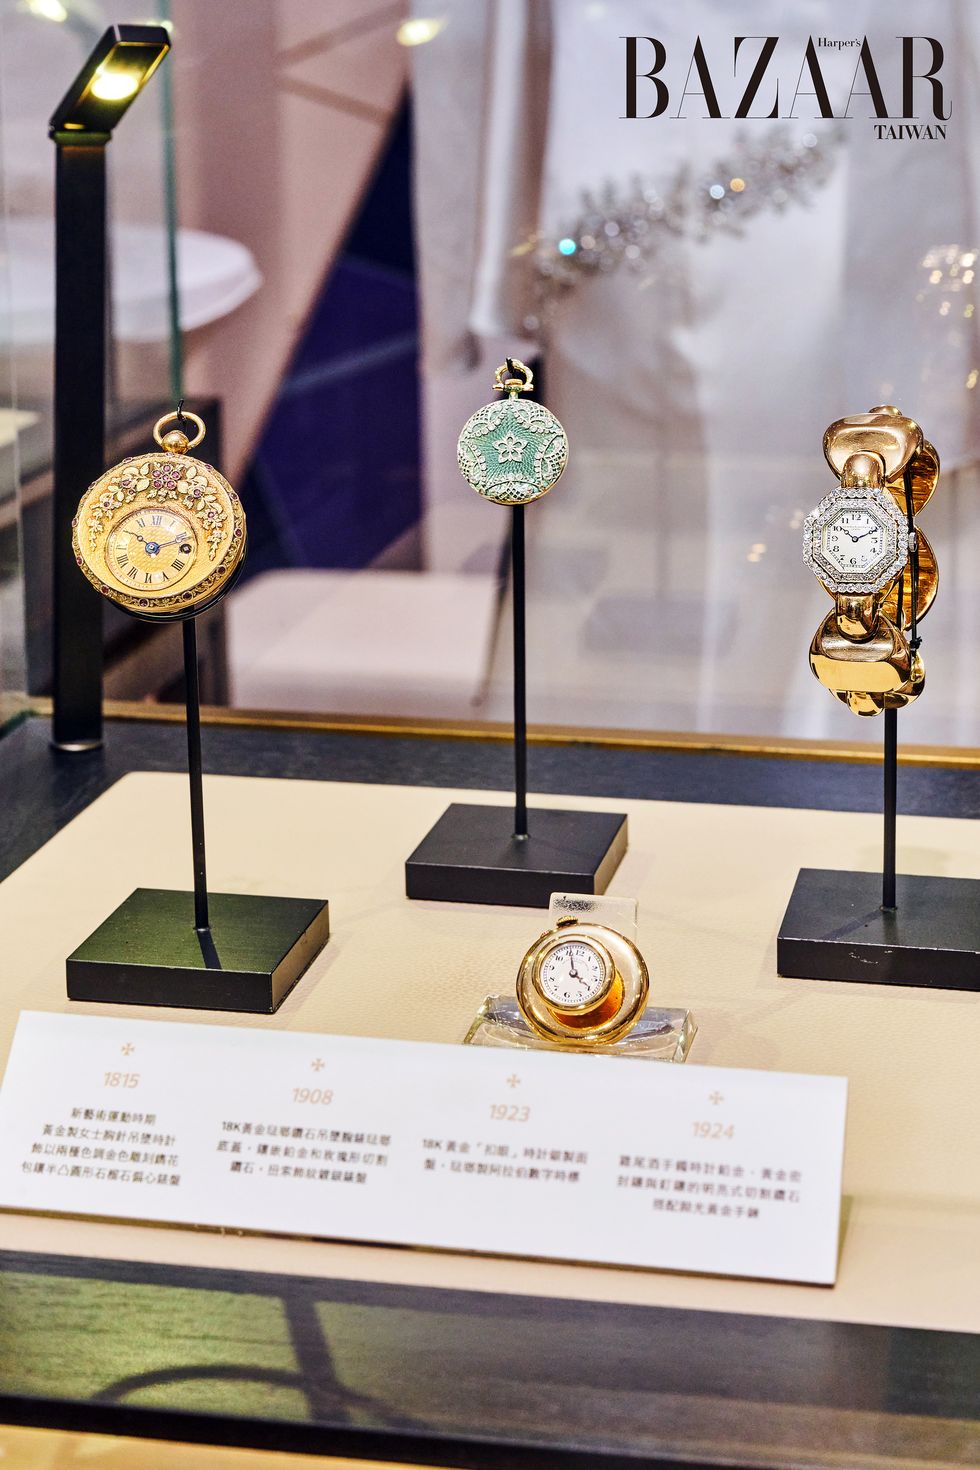 江詩丹頓經典古董女性時計與風尚講座